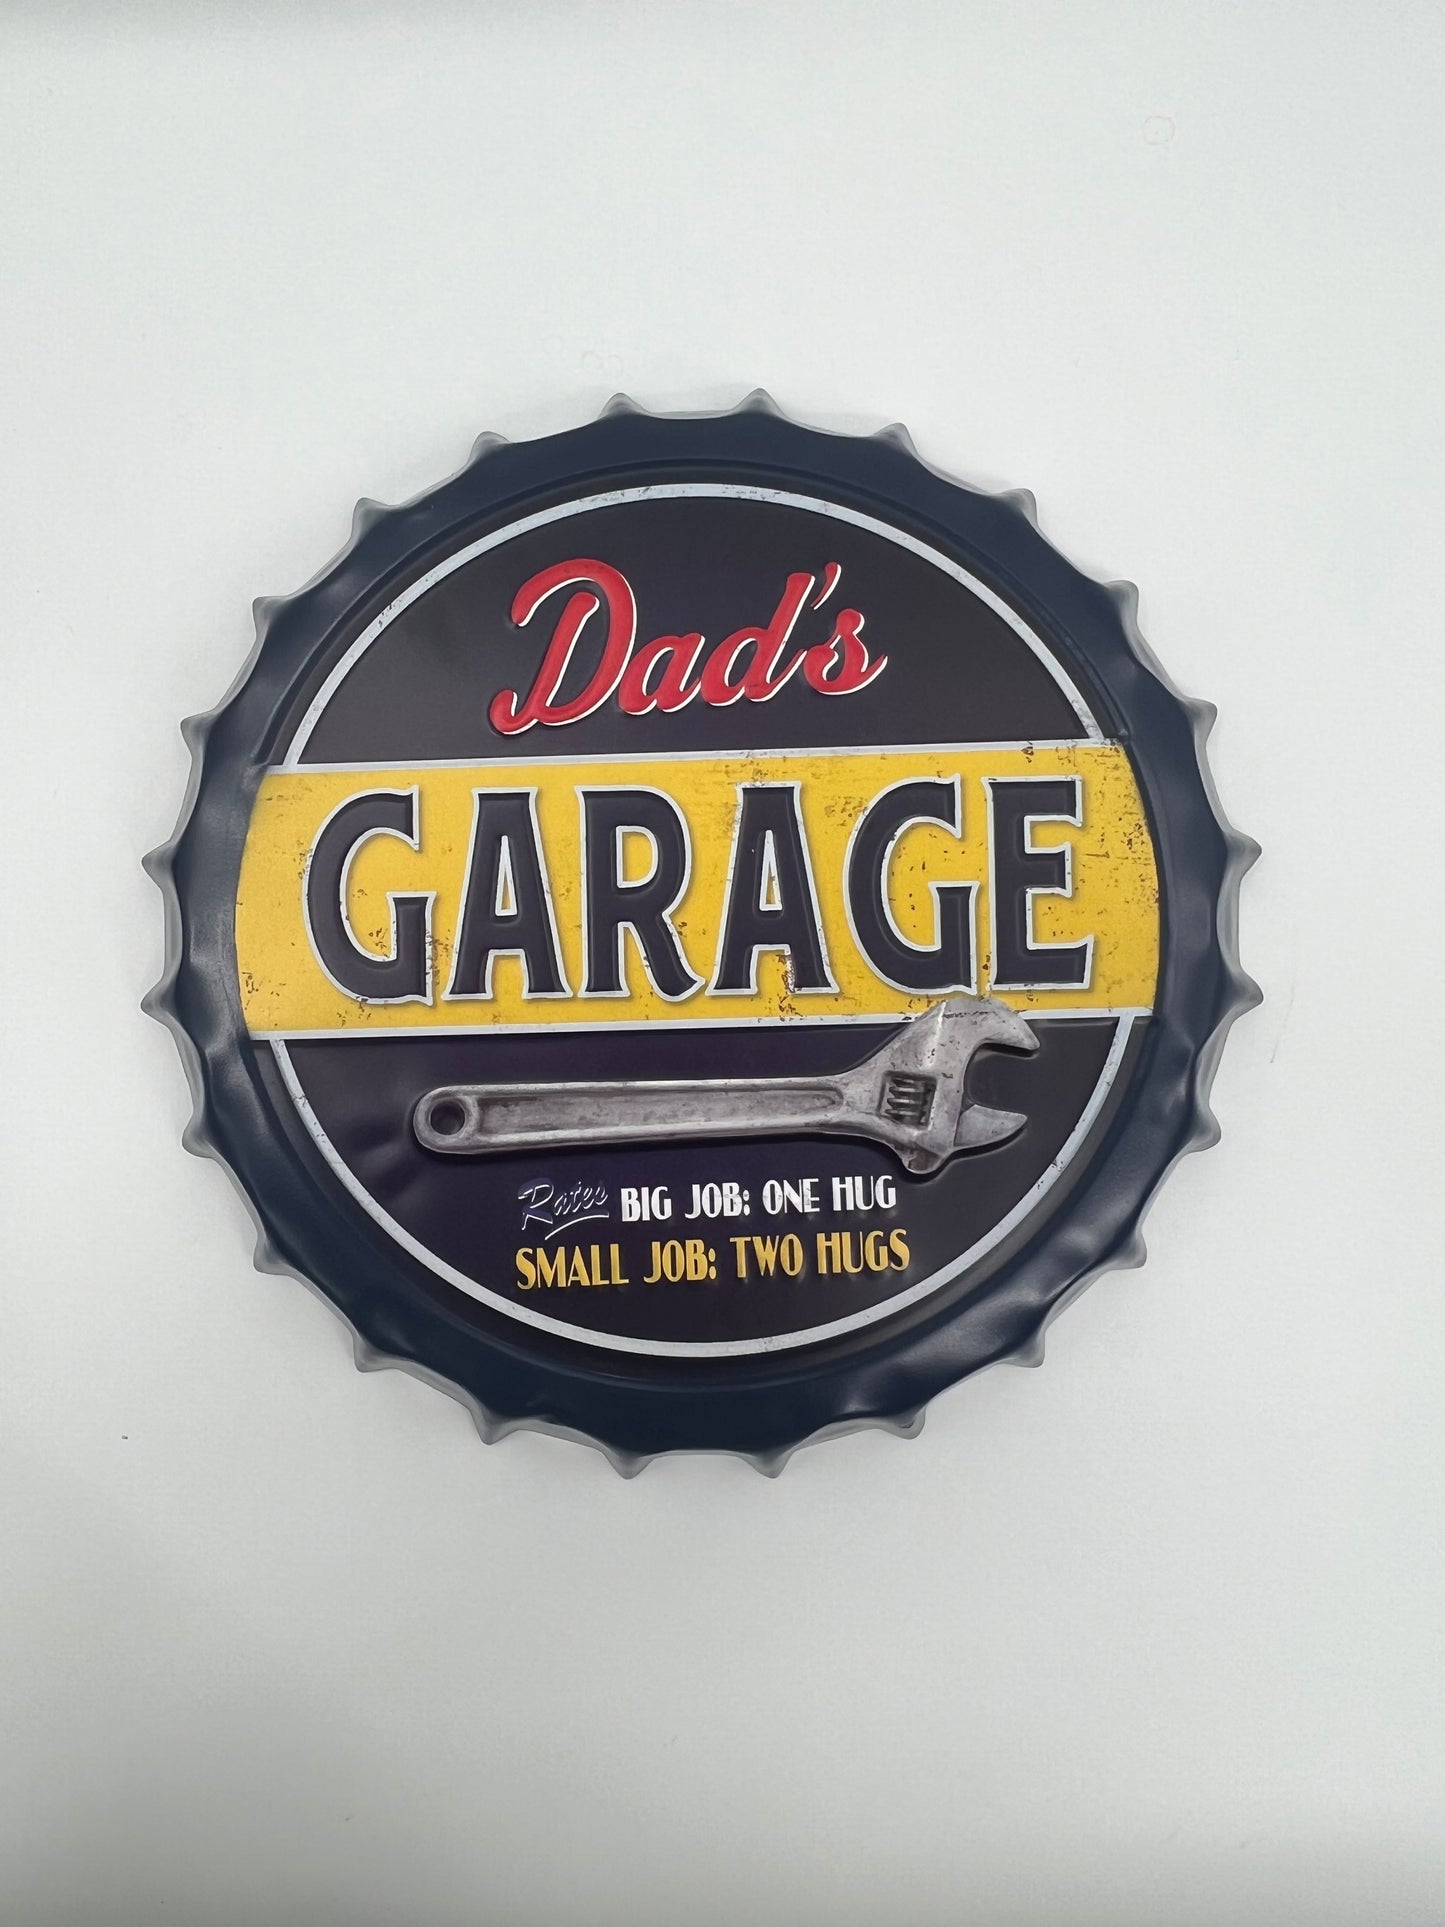 Blechschild "Korken Dads Garage"